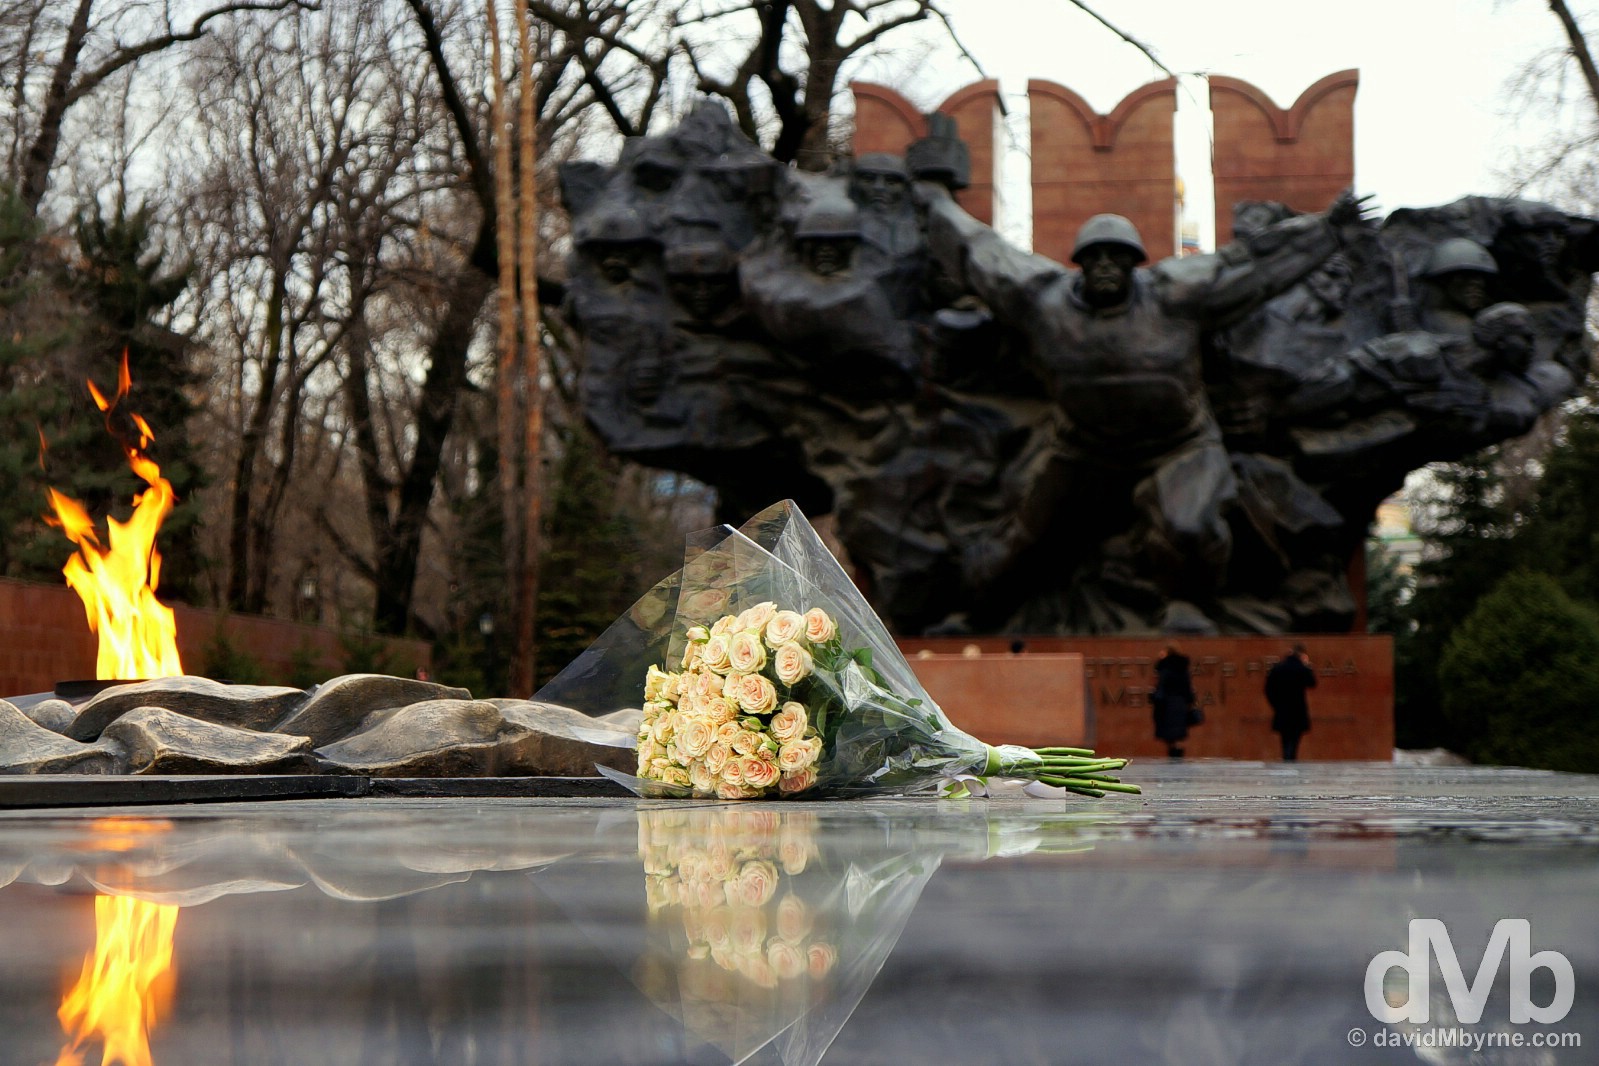 The War Memorial in Panfilov Park, Almaty, Kazakhstan. February 13, 2015. 